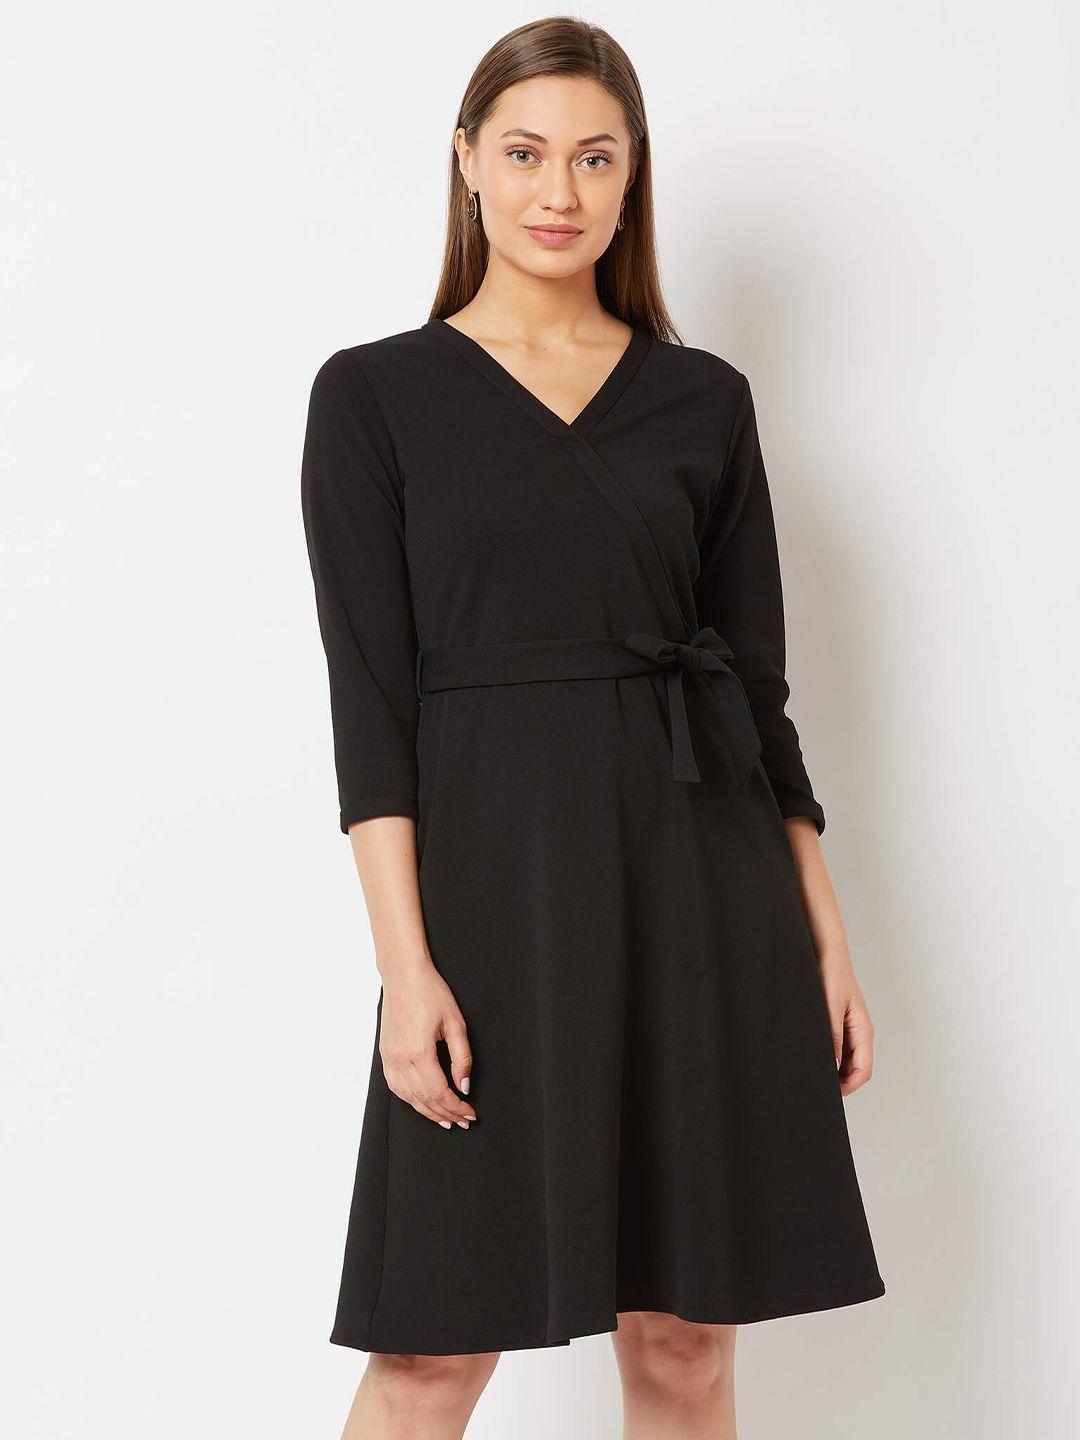 salt attire black fit & flare dress